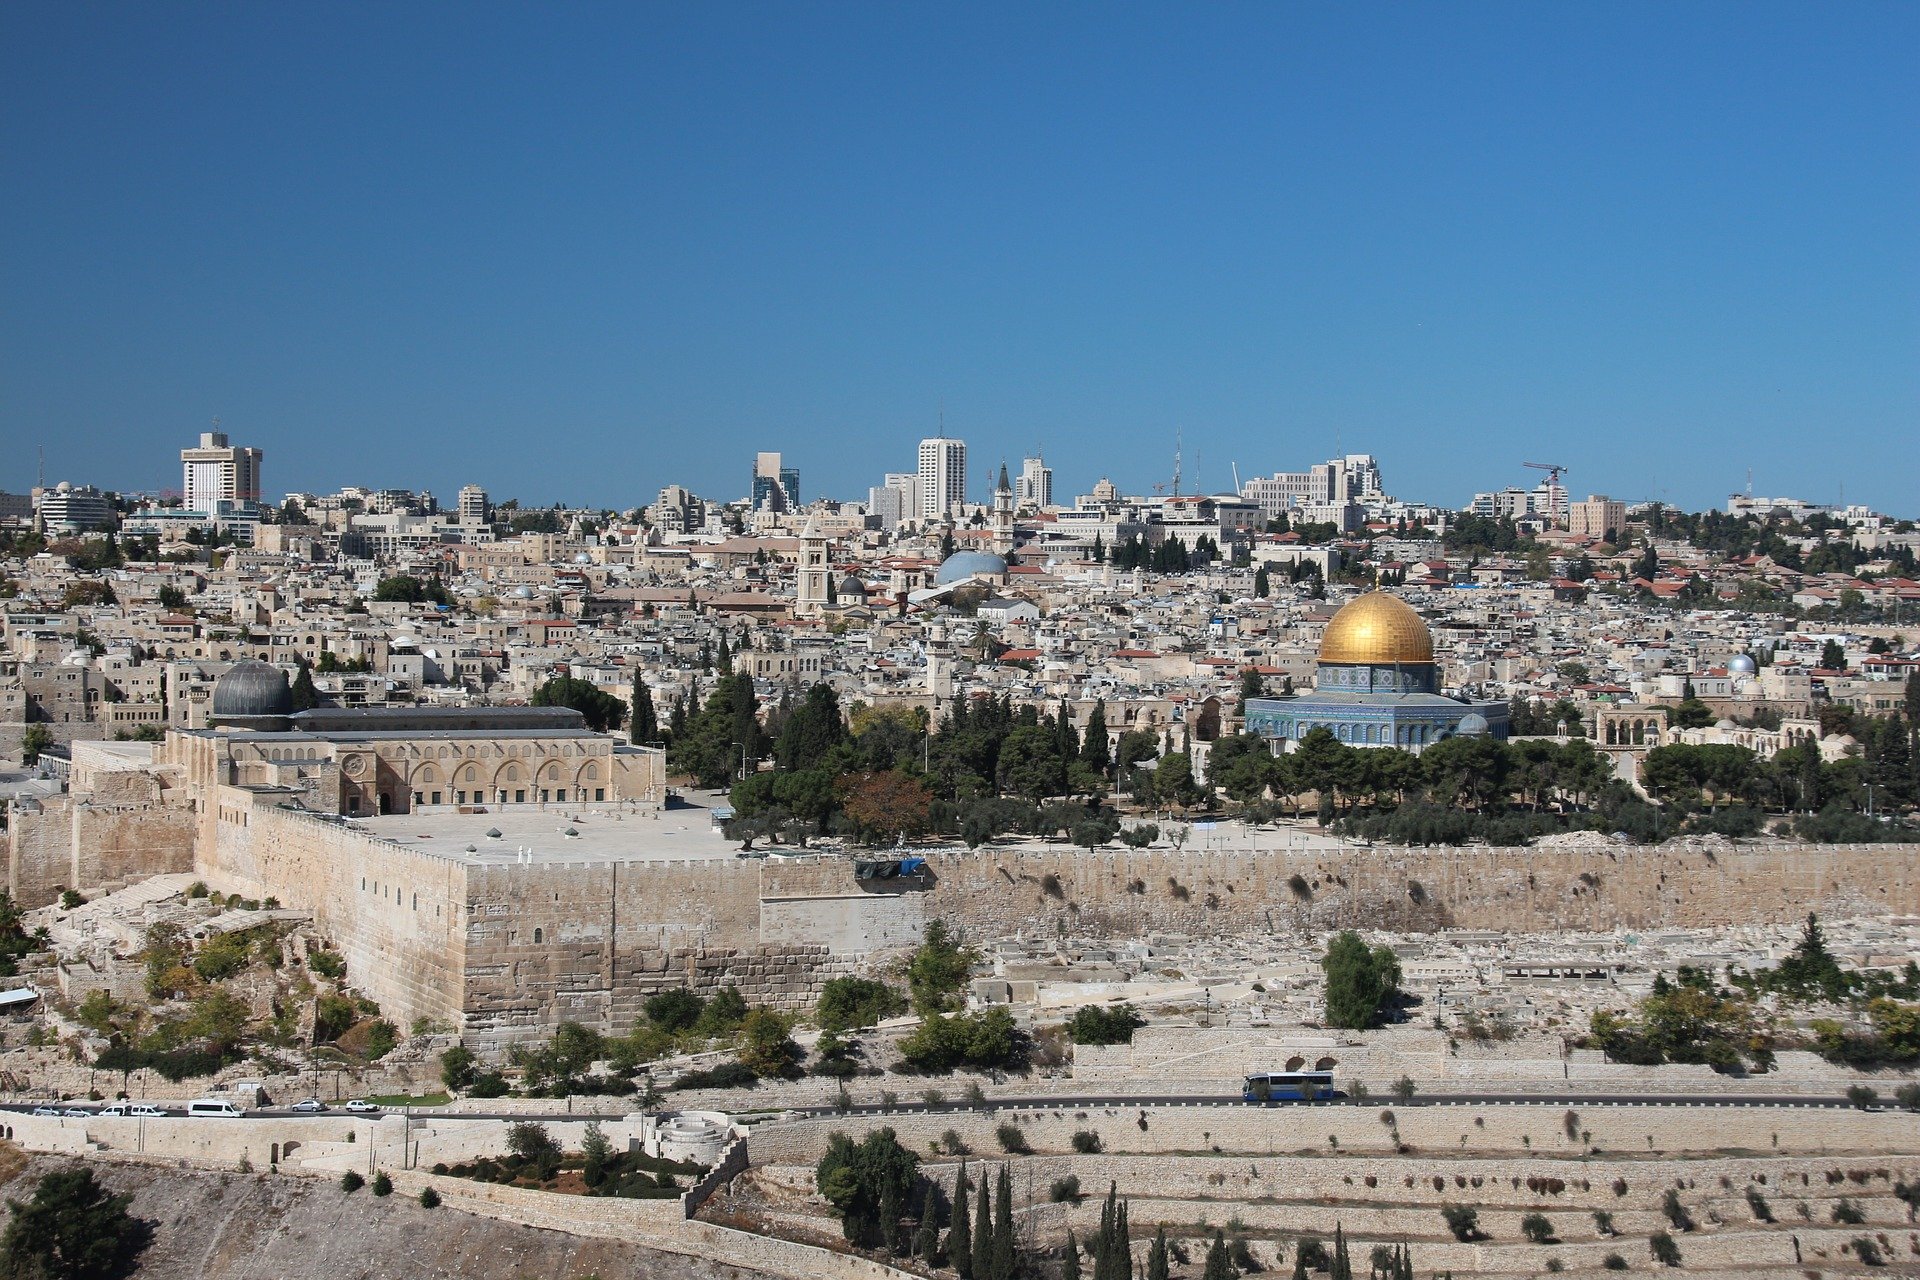 Tour the Old City of Jerusalem